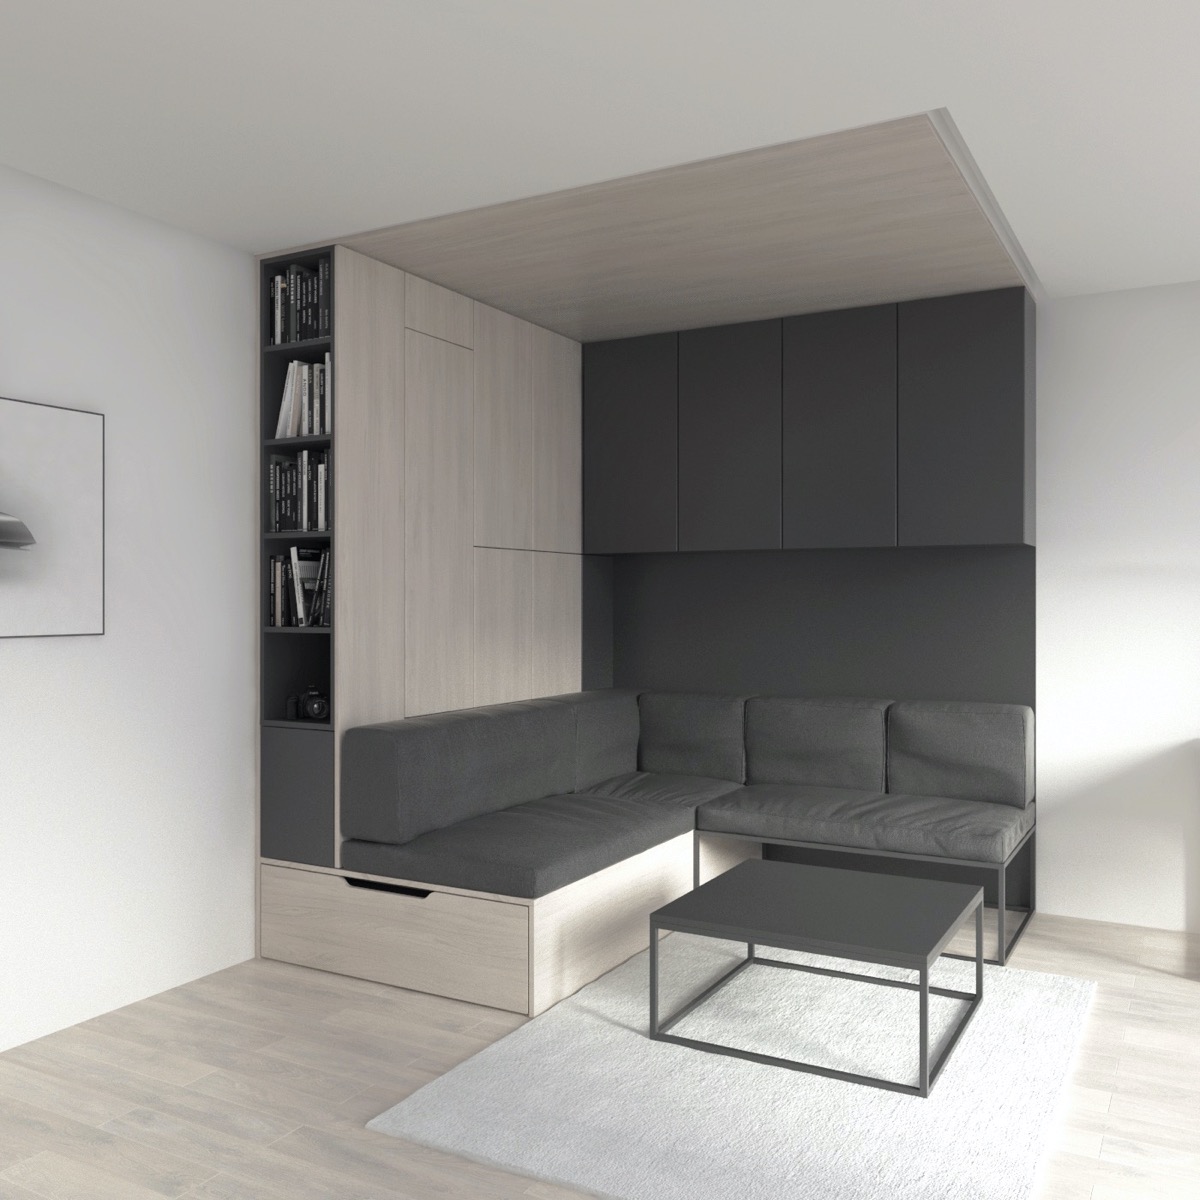 30平极简紧凑的小公寓设计